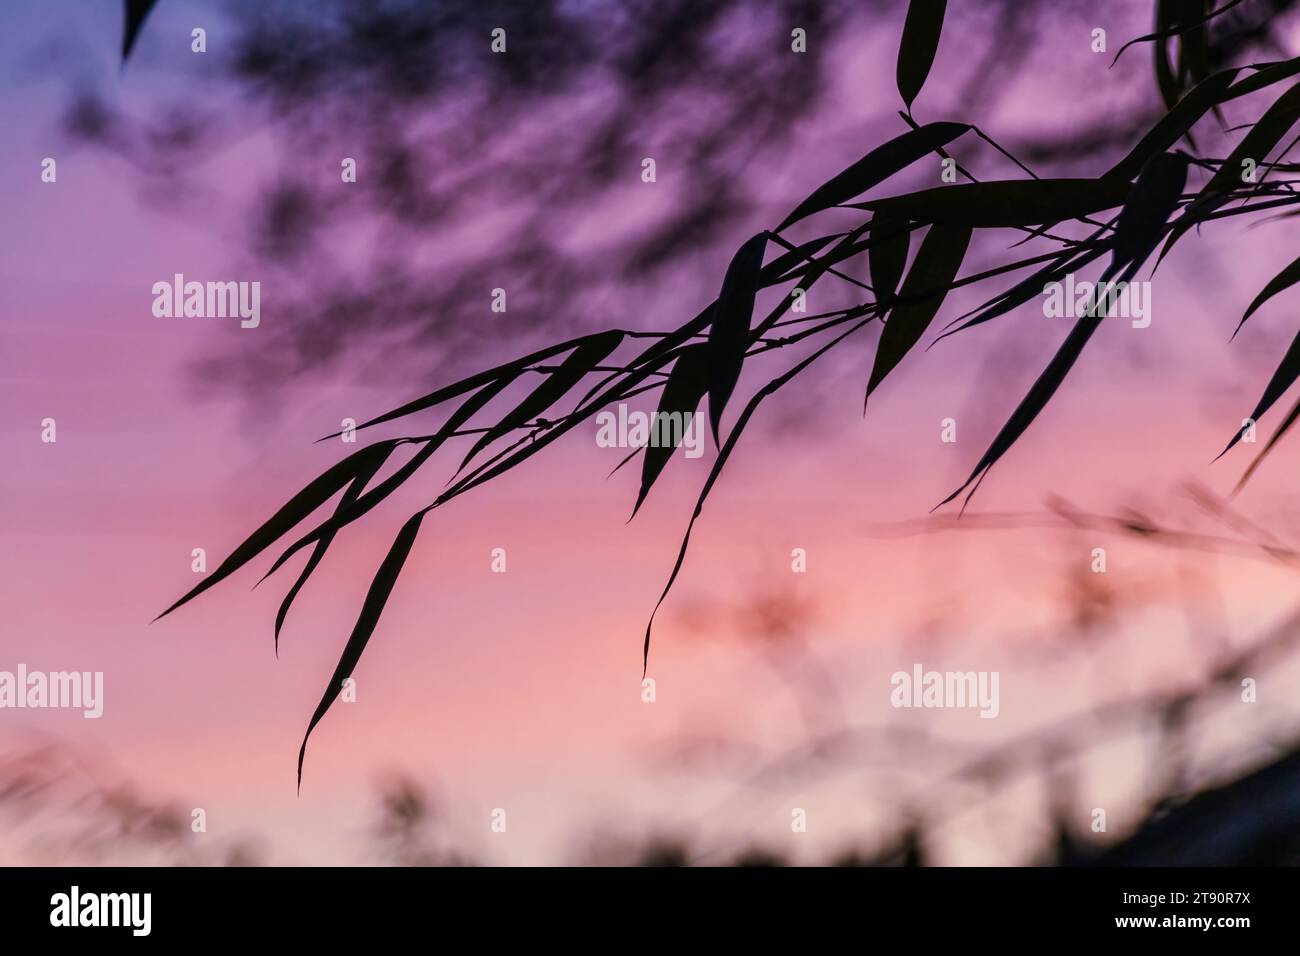 Feuilles de bambou en silhouette contre un ciel au coucher du soleil avec des tons violets, roses et oranges à Vancouver, Canada. Banque D'Images